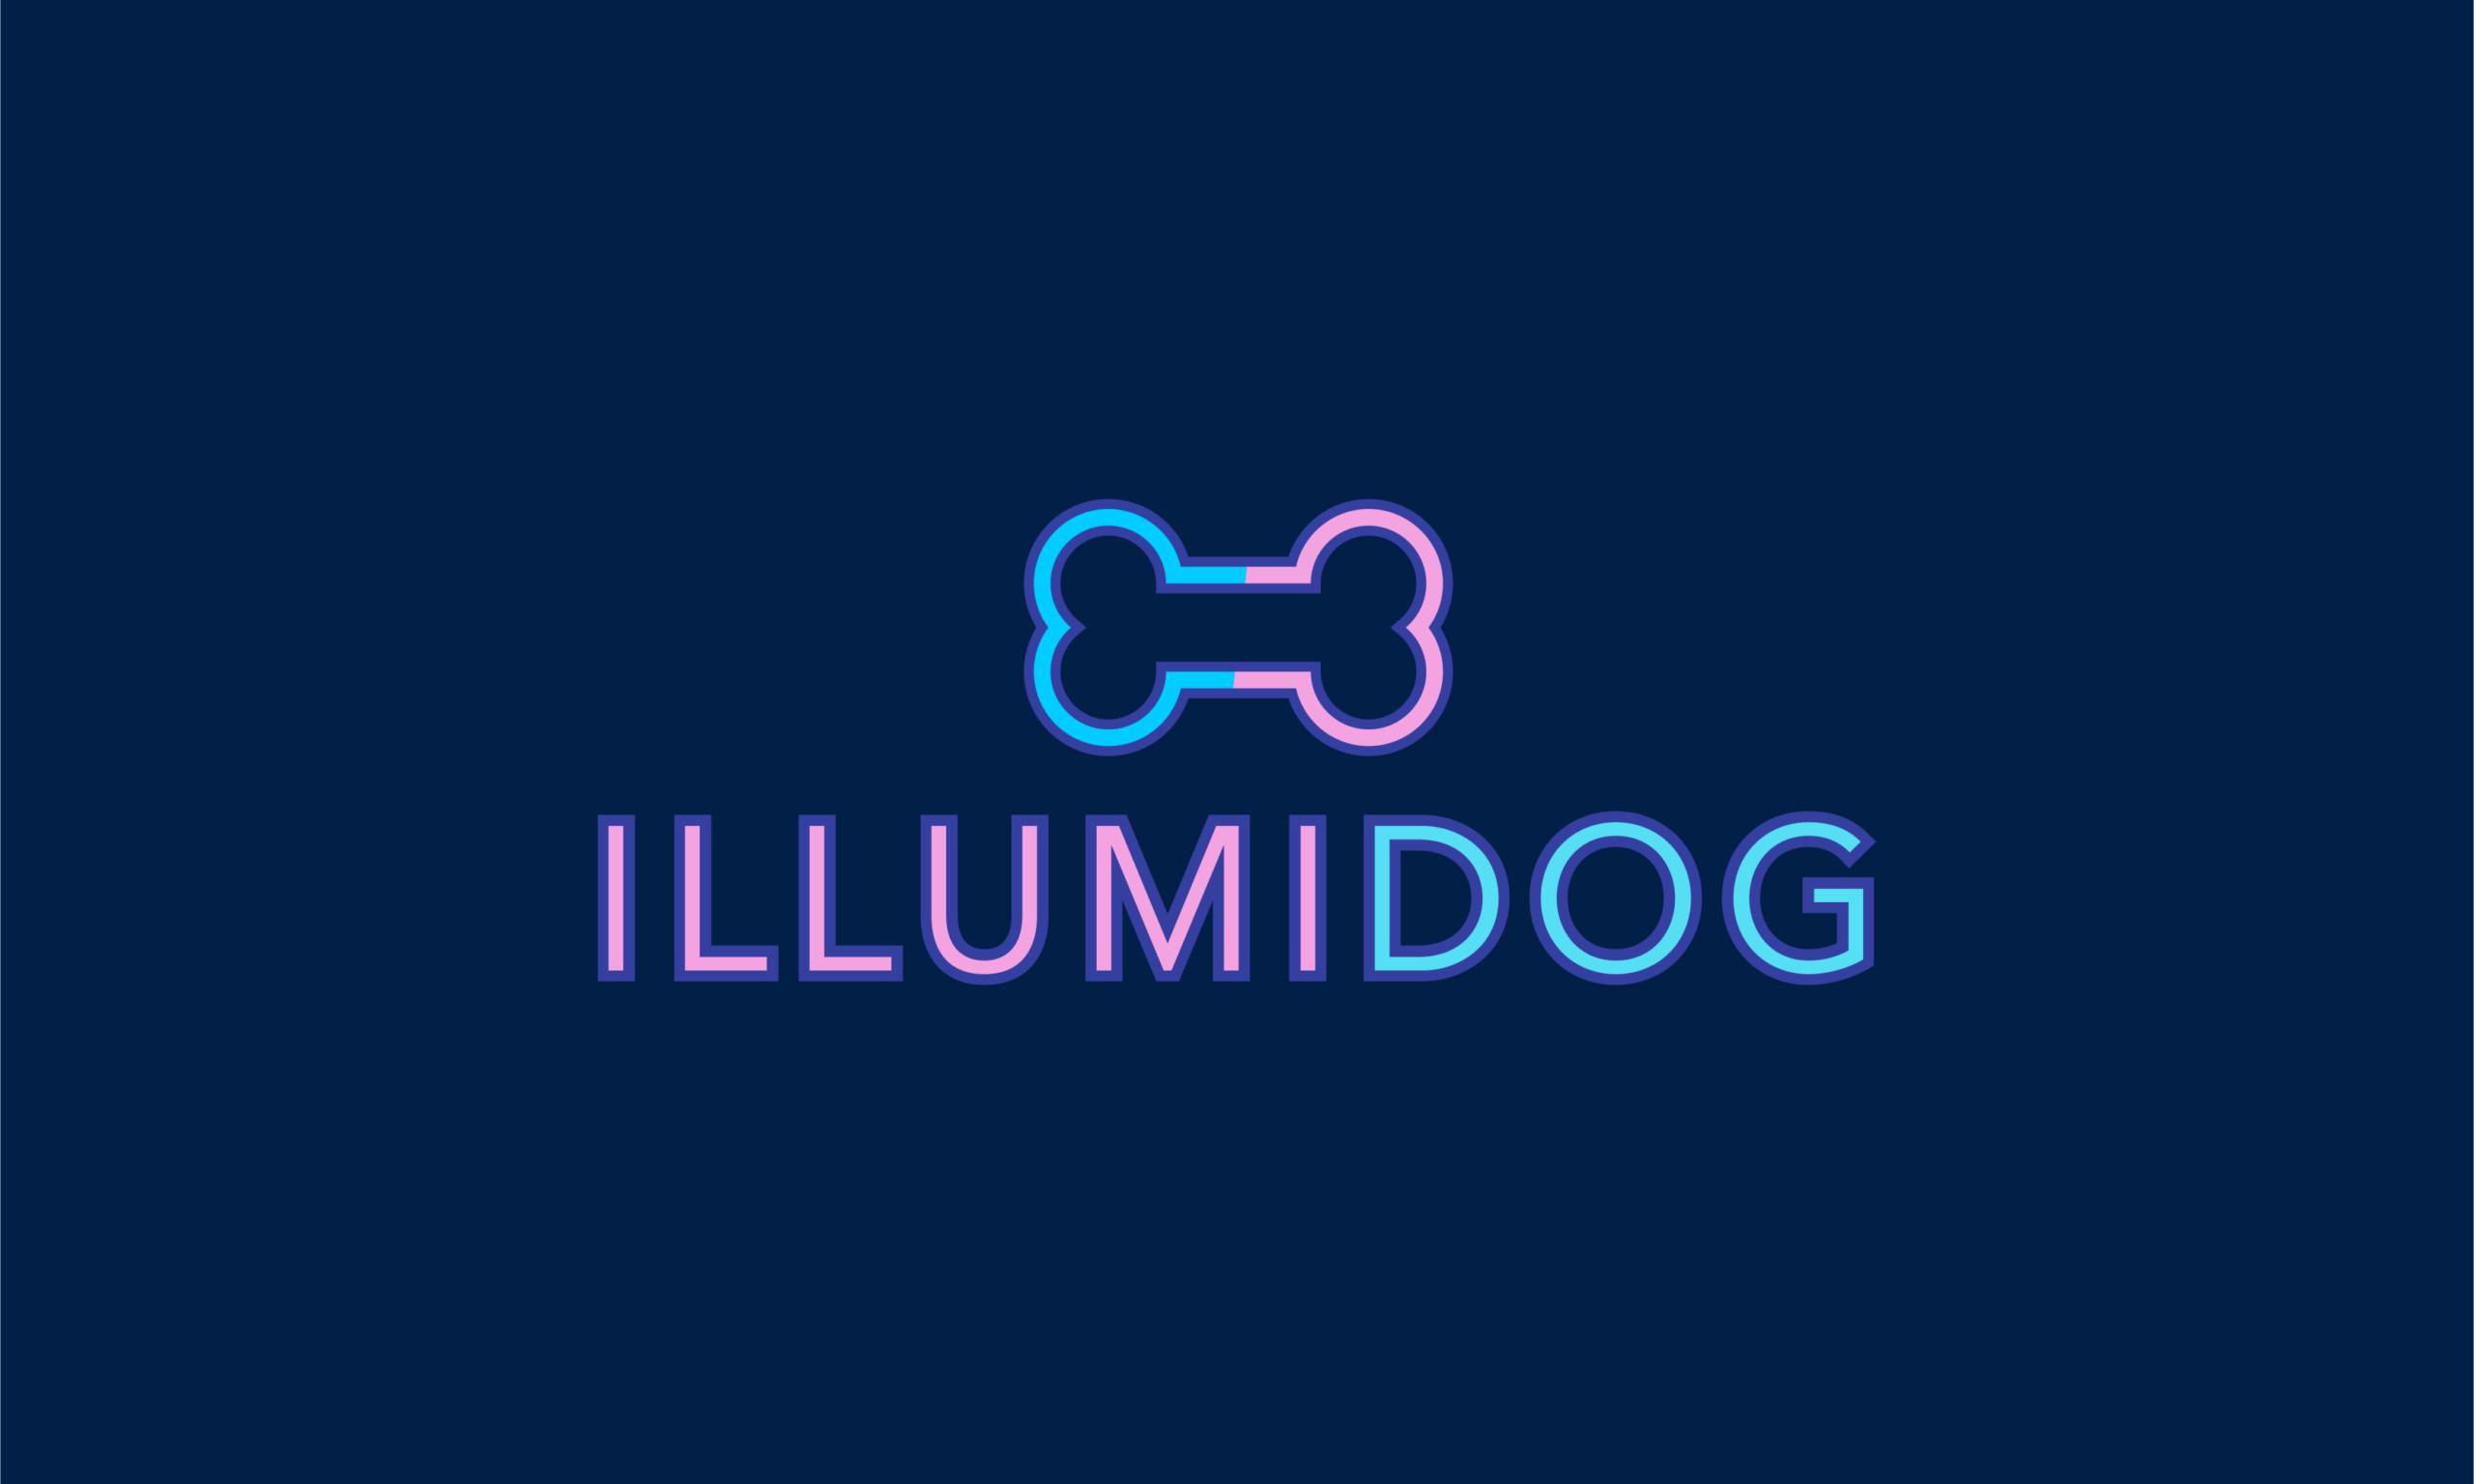 illumidog.png